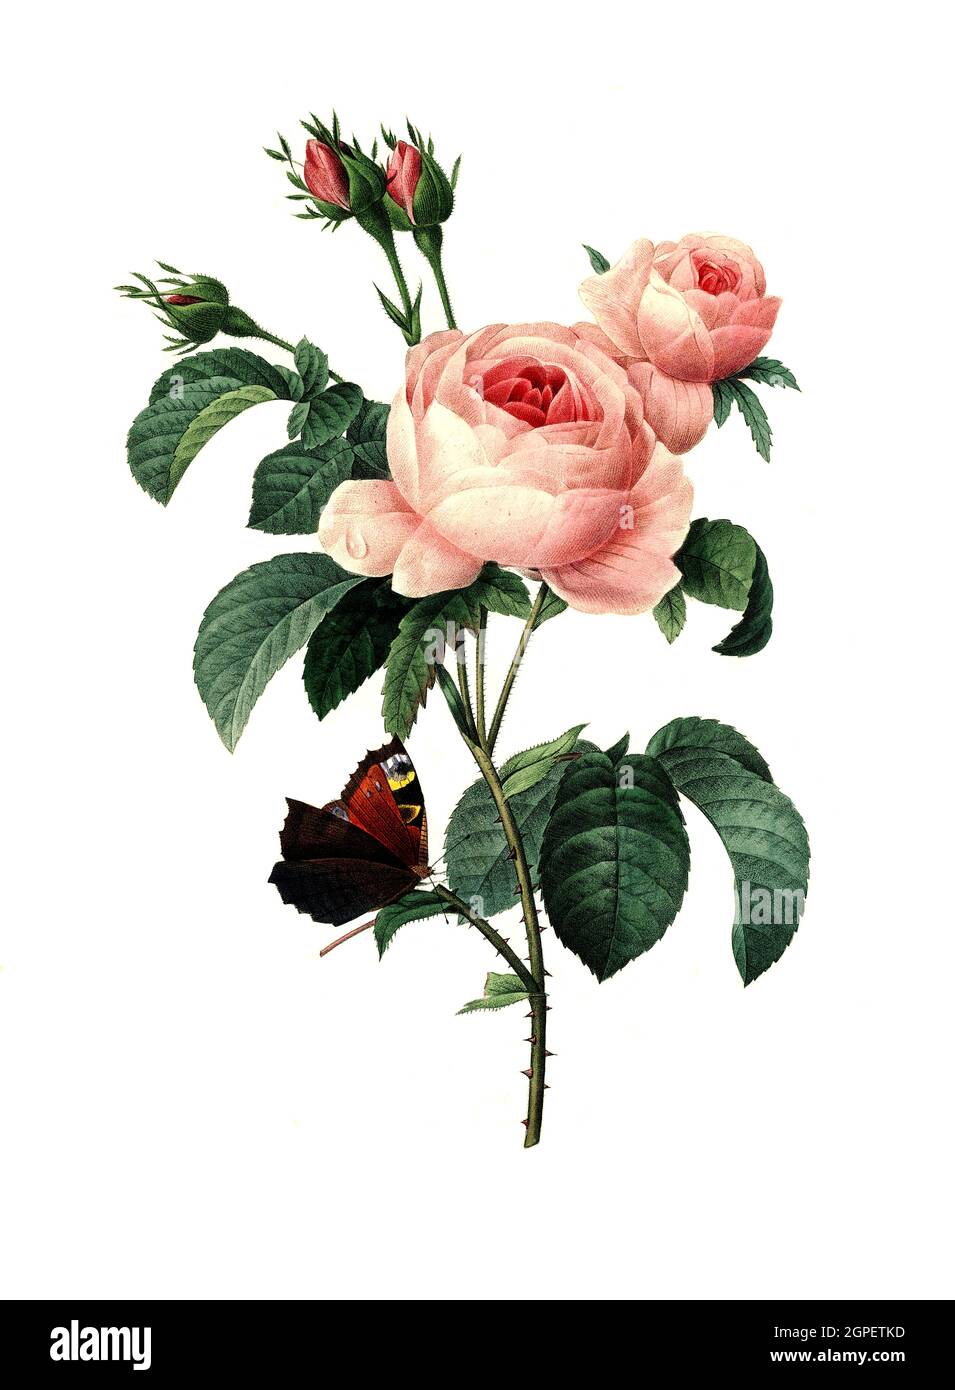 Rosa centifolia, Rose, Zentifolie, Rosengruppe mit gefüllten Blüten, die zu den alten Rosen zählt / Rosa centifolia, la rose de Provence, la rose de chou ou la rose de Mai, est une rose hybride développée par les éleveurs hollandais entre le XVIIe siècle et le XIXe siècle, Digital aufbereitete Reproduktion einer Aquarellzeichnung aus dem Jahre 1827, von P.J.Redoue, Kupfertafel / reproduction d'un dessin d'aquarelle réalisé en 1827, par P.J. Redoue, plaque de cuivre, Originaldatum unbekannt Banque D'Images